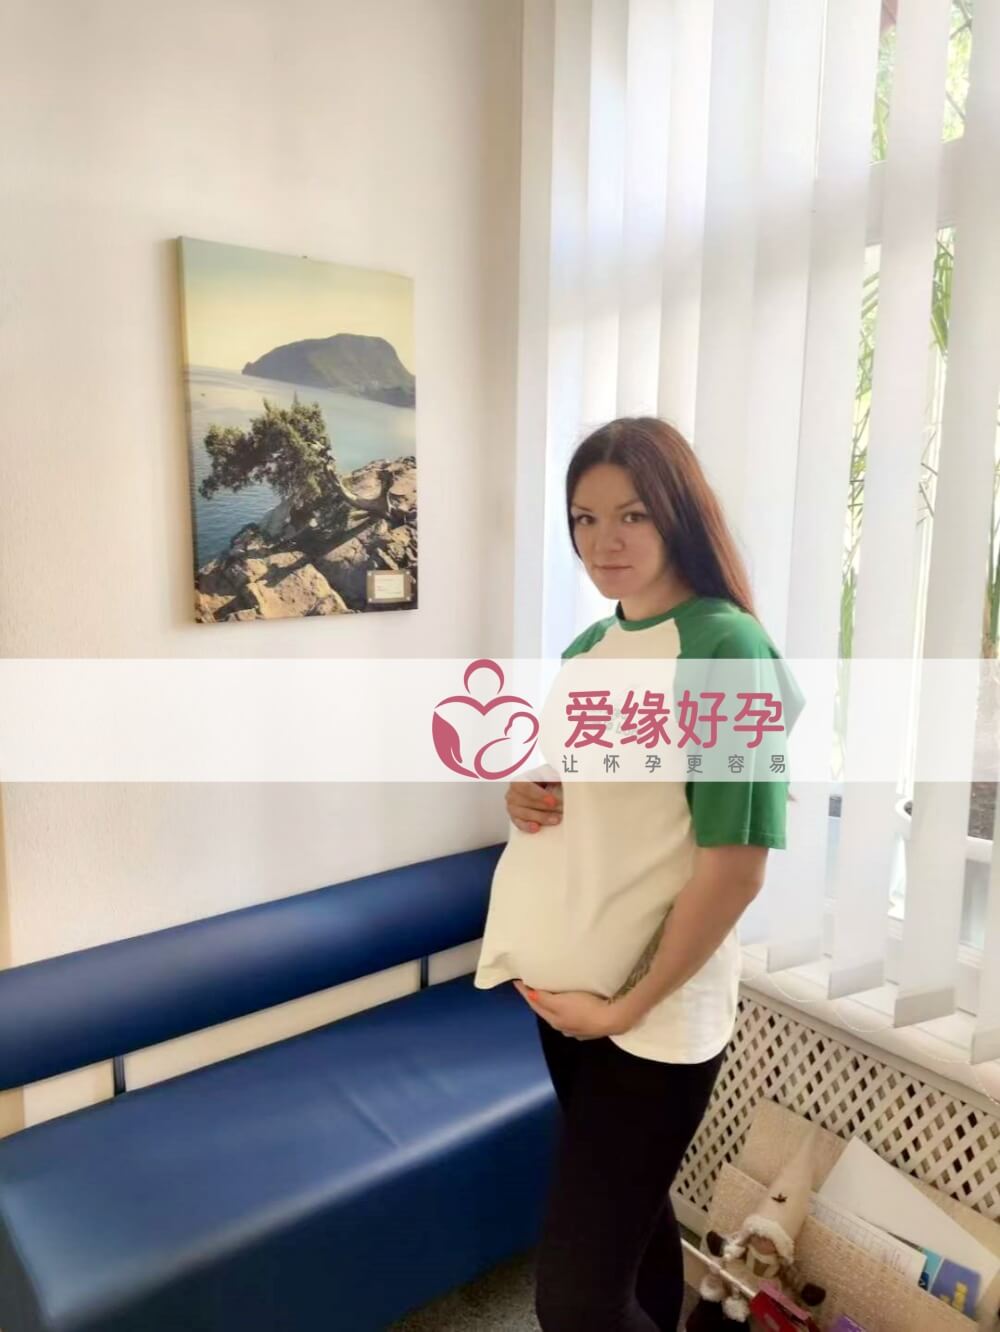 爱缘好孕:乌克兰爱心妈妈25周孕检顺利通过